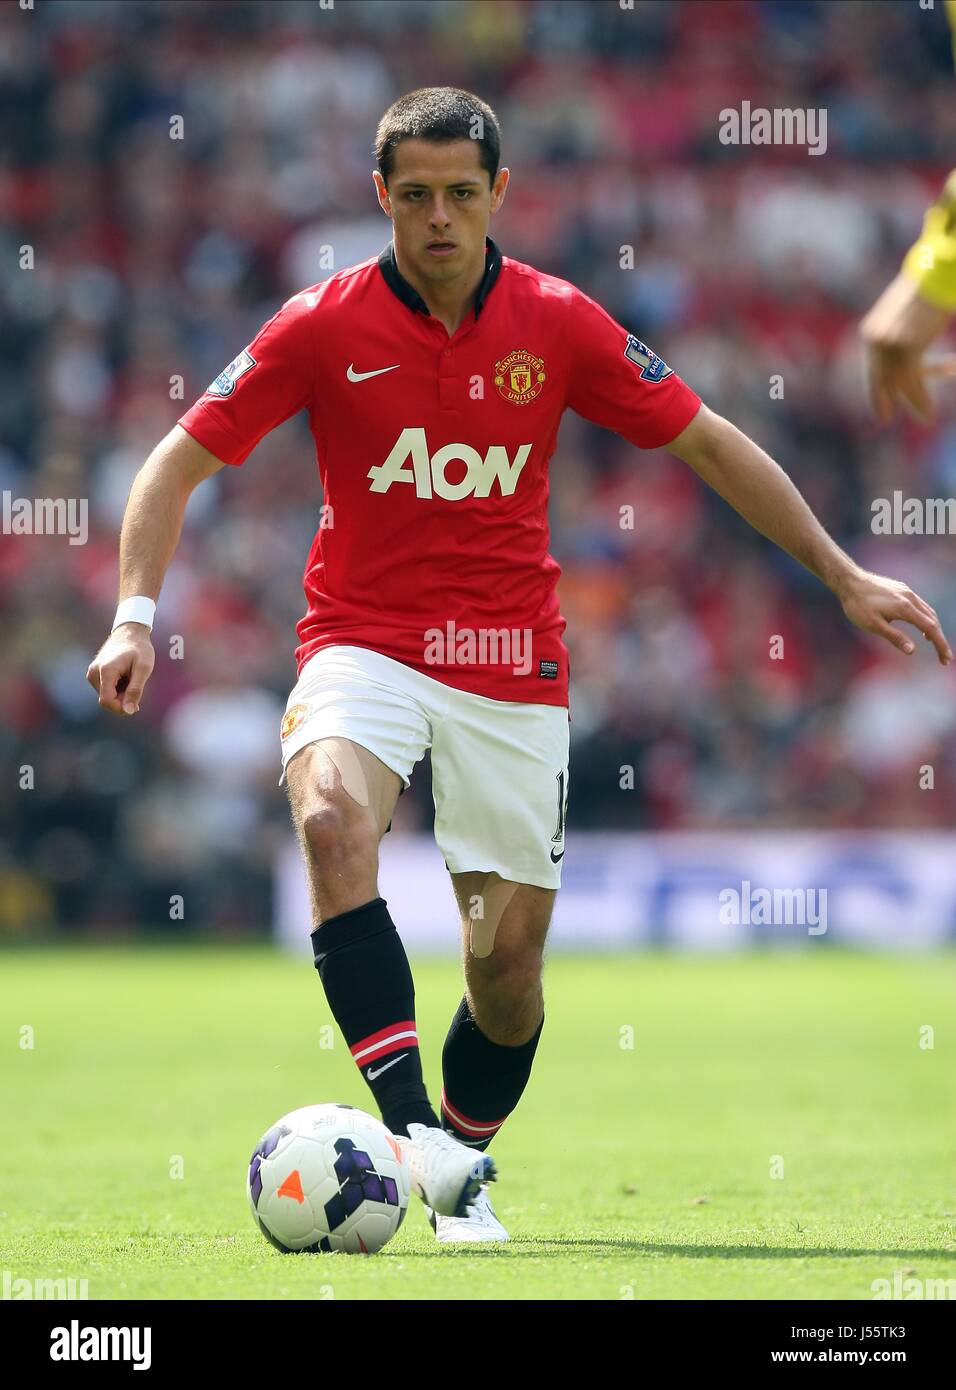 Soccerstarz - Man Utd Javier Hernández - Home Kit (2014 version